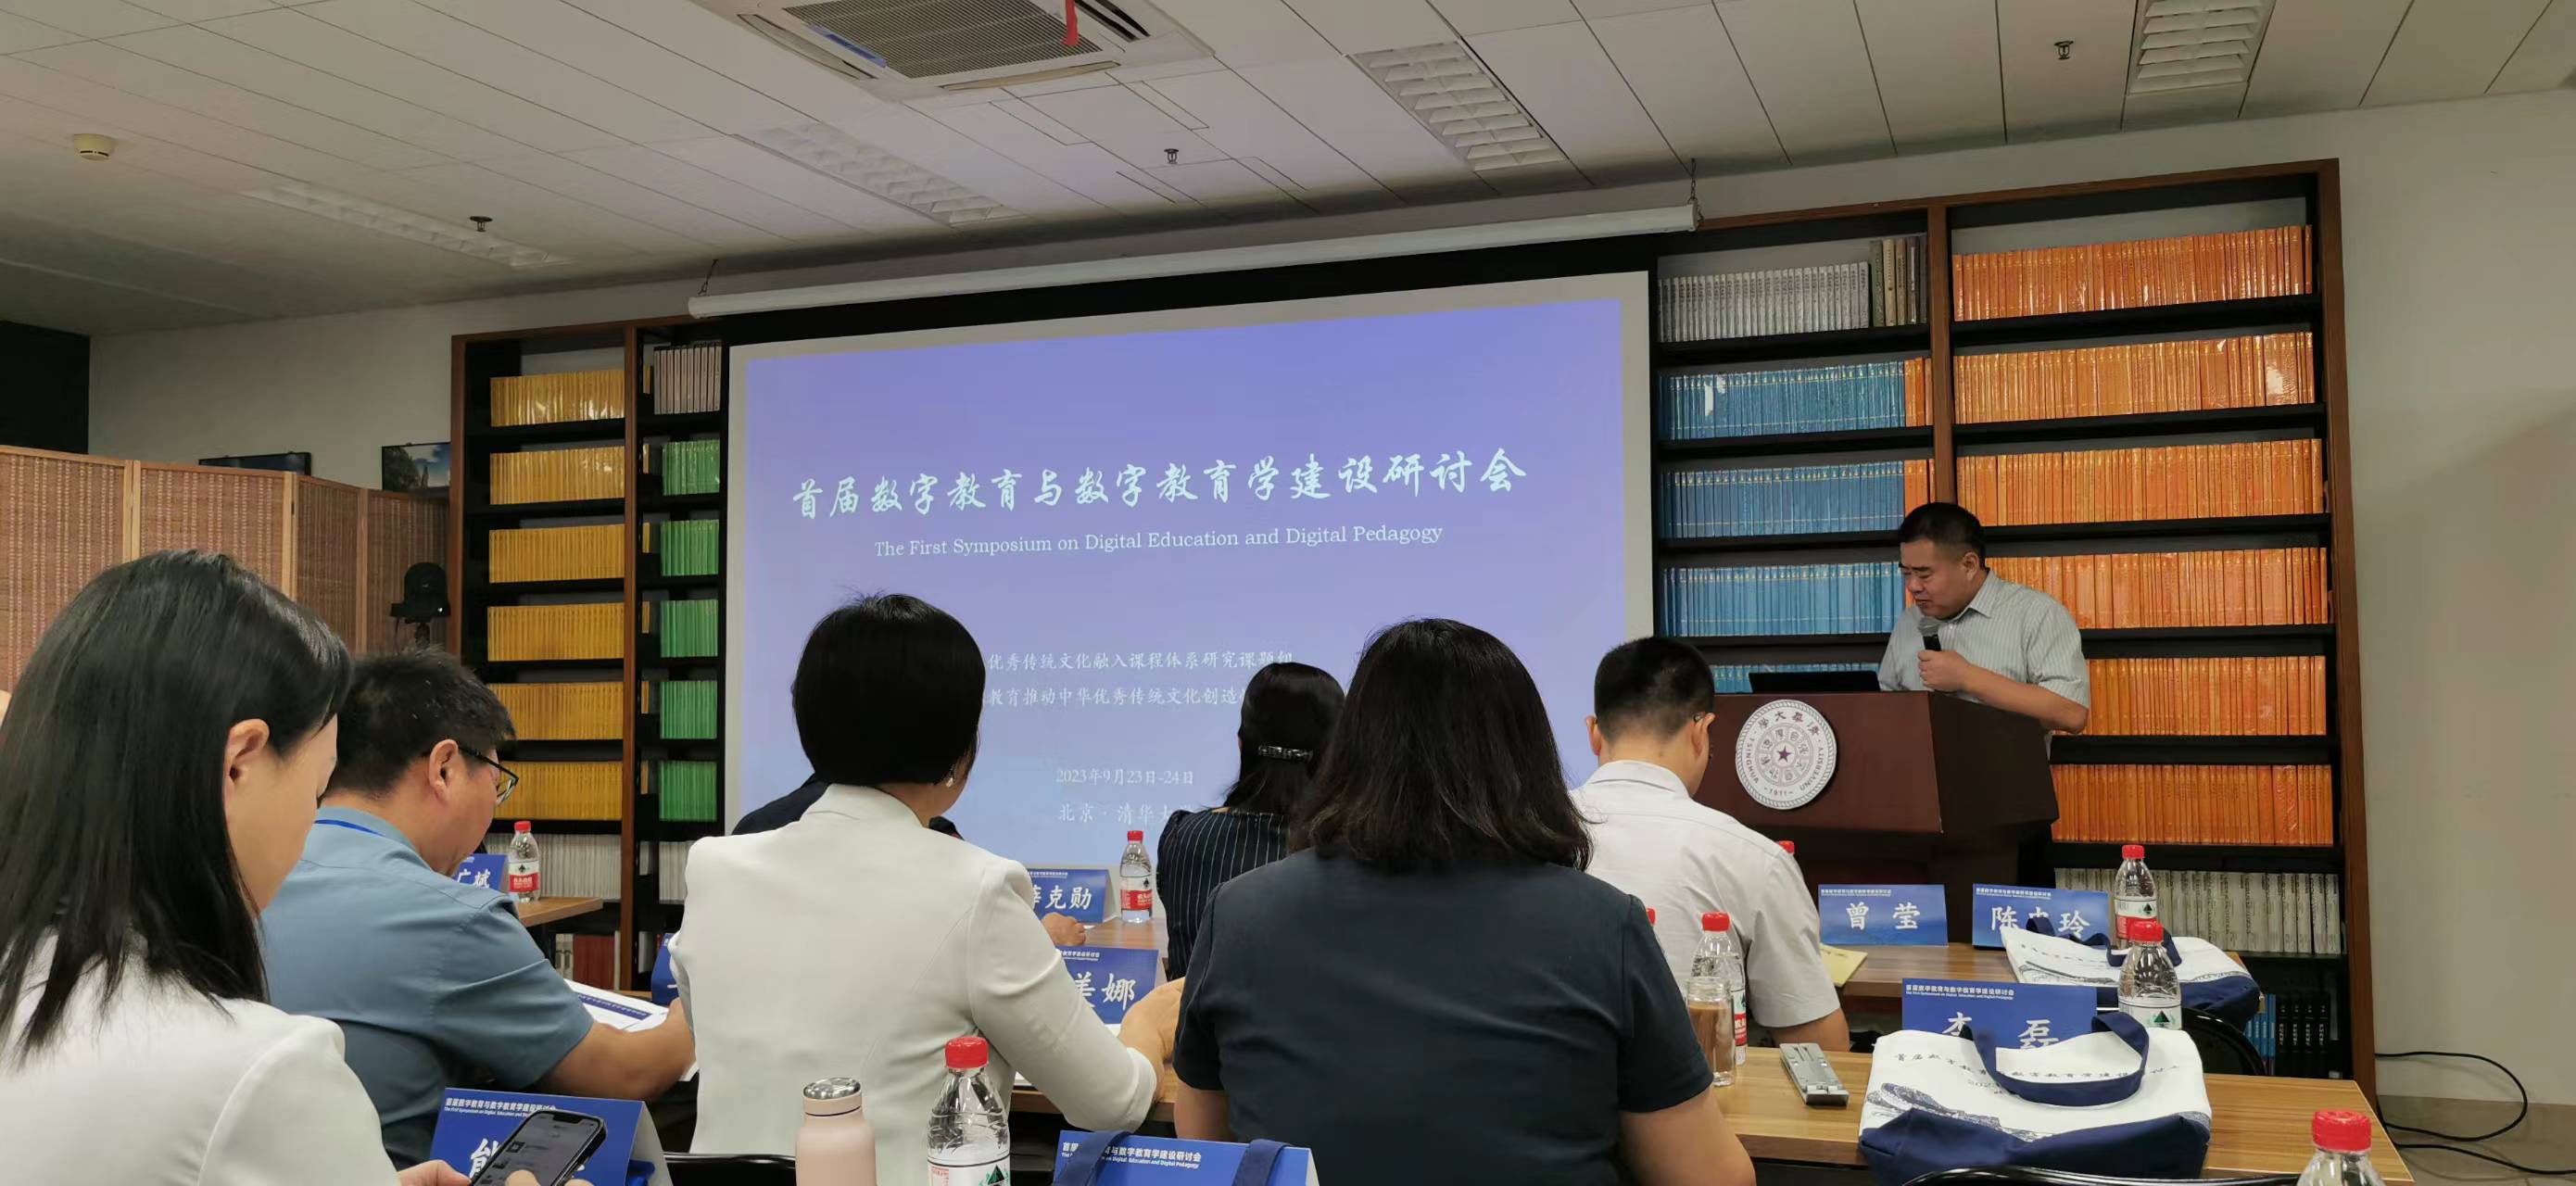 首届数字教育与数字教育学建设研讨会在京召开